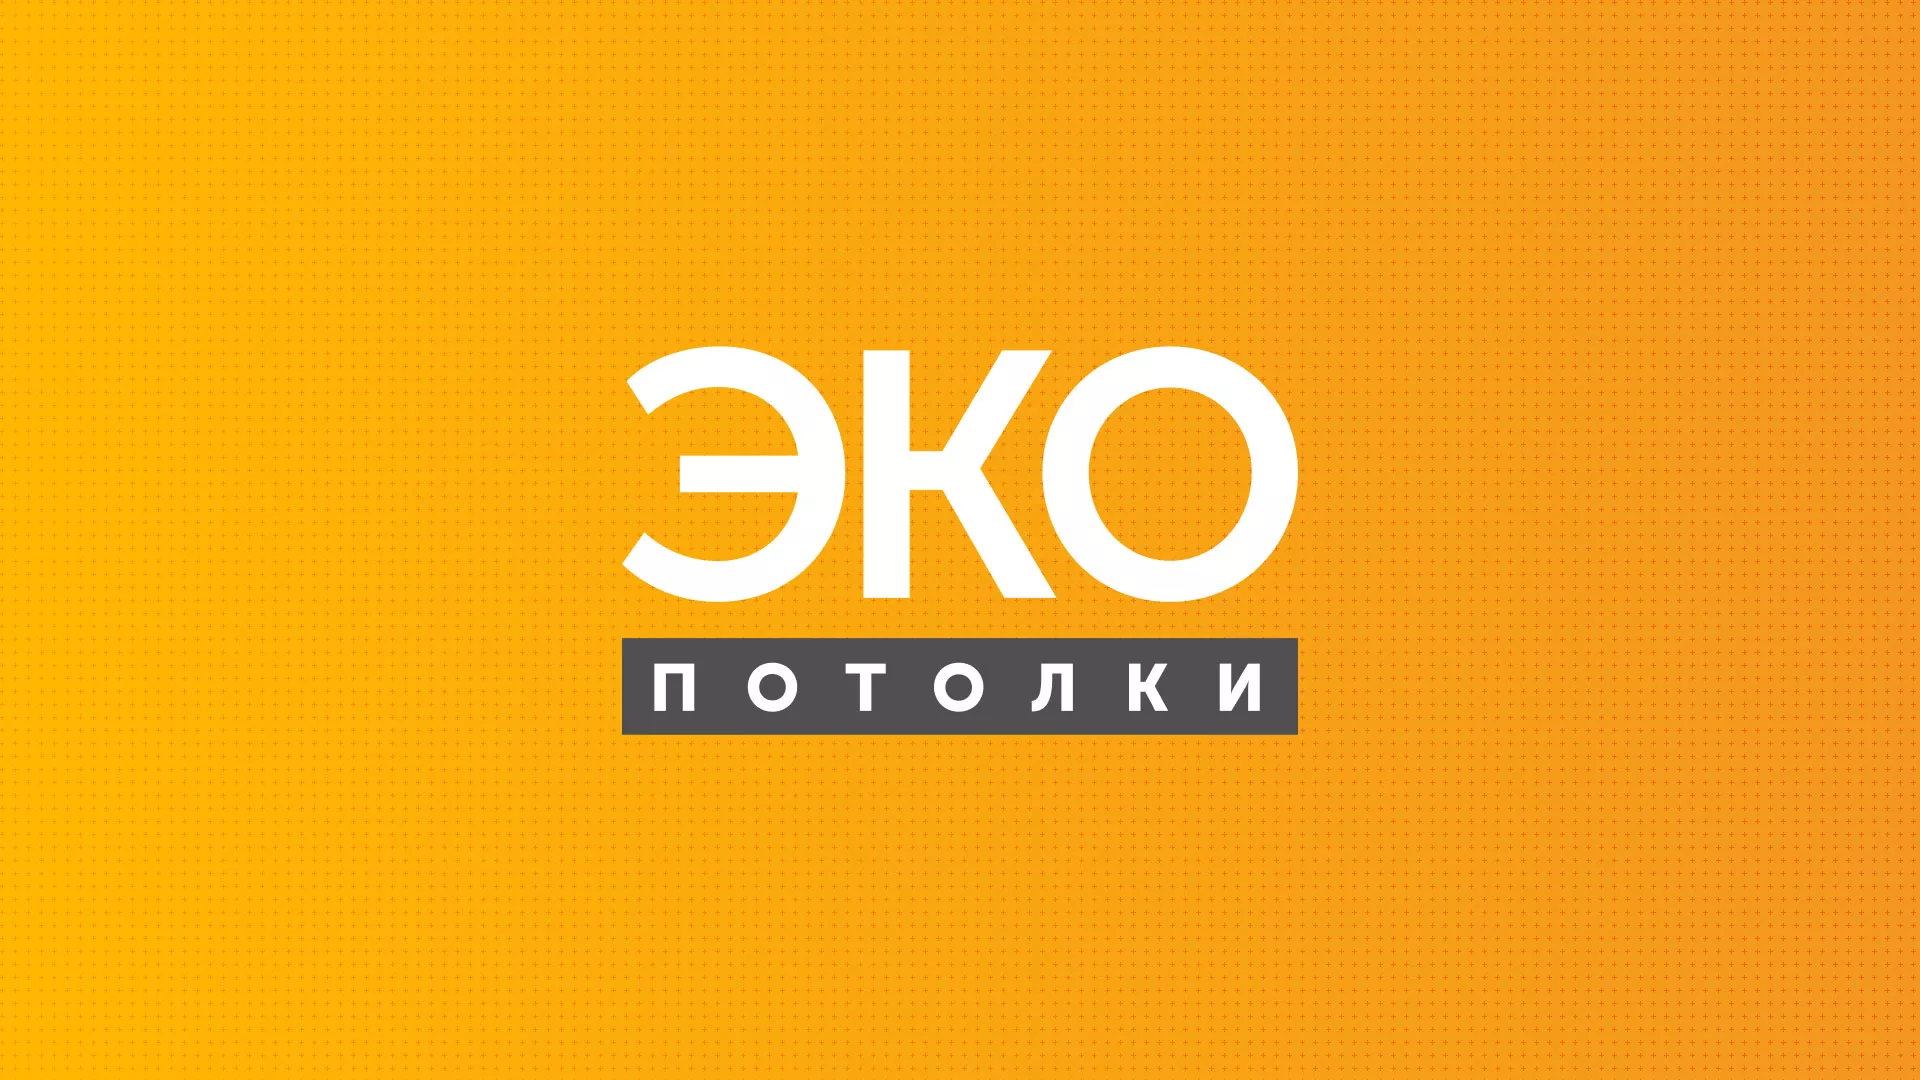 Разработка сайта по натяжным потолкам «Эко Потолки» в Архангельске